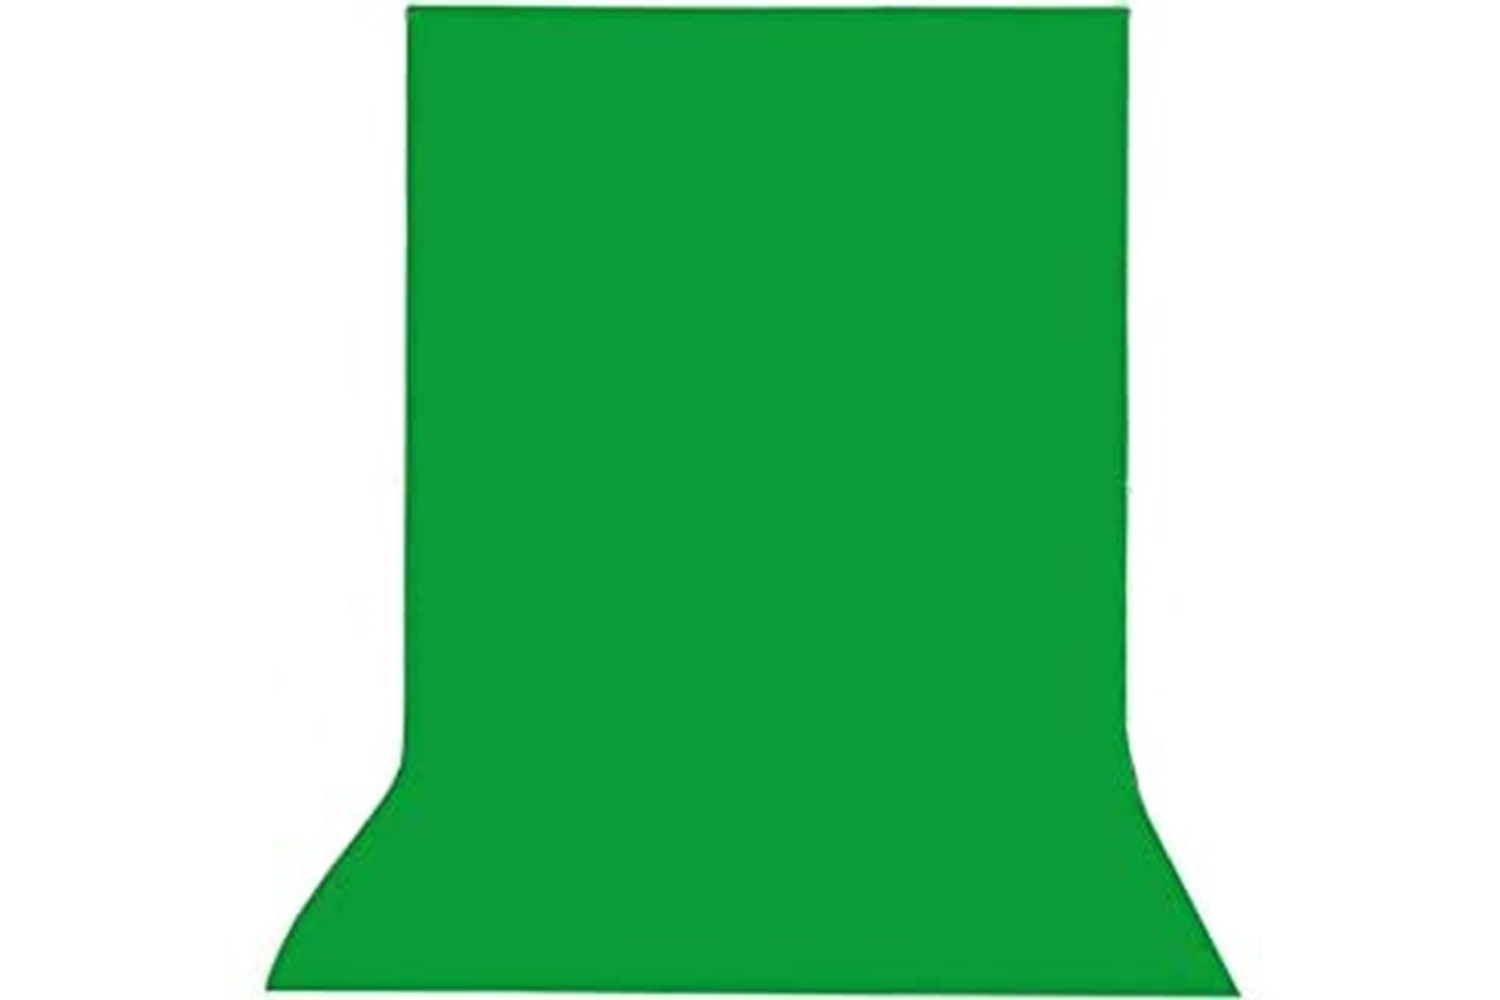 TEWISE 200x200cm Yeşil Fon Perde Green Screen